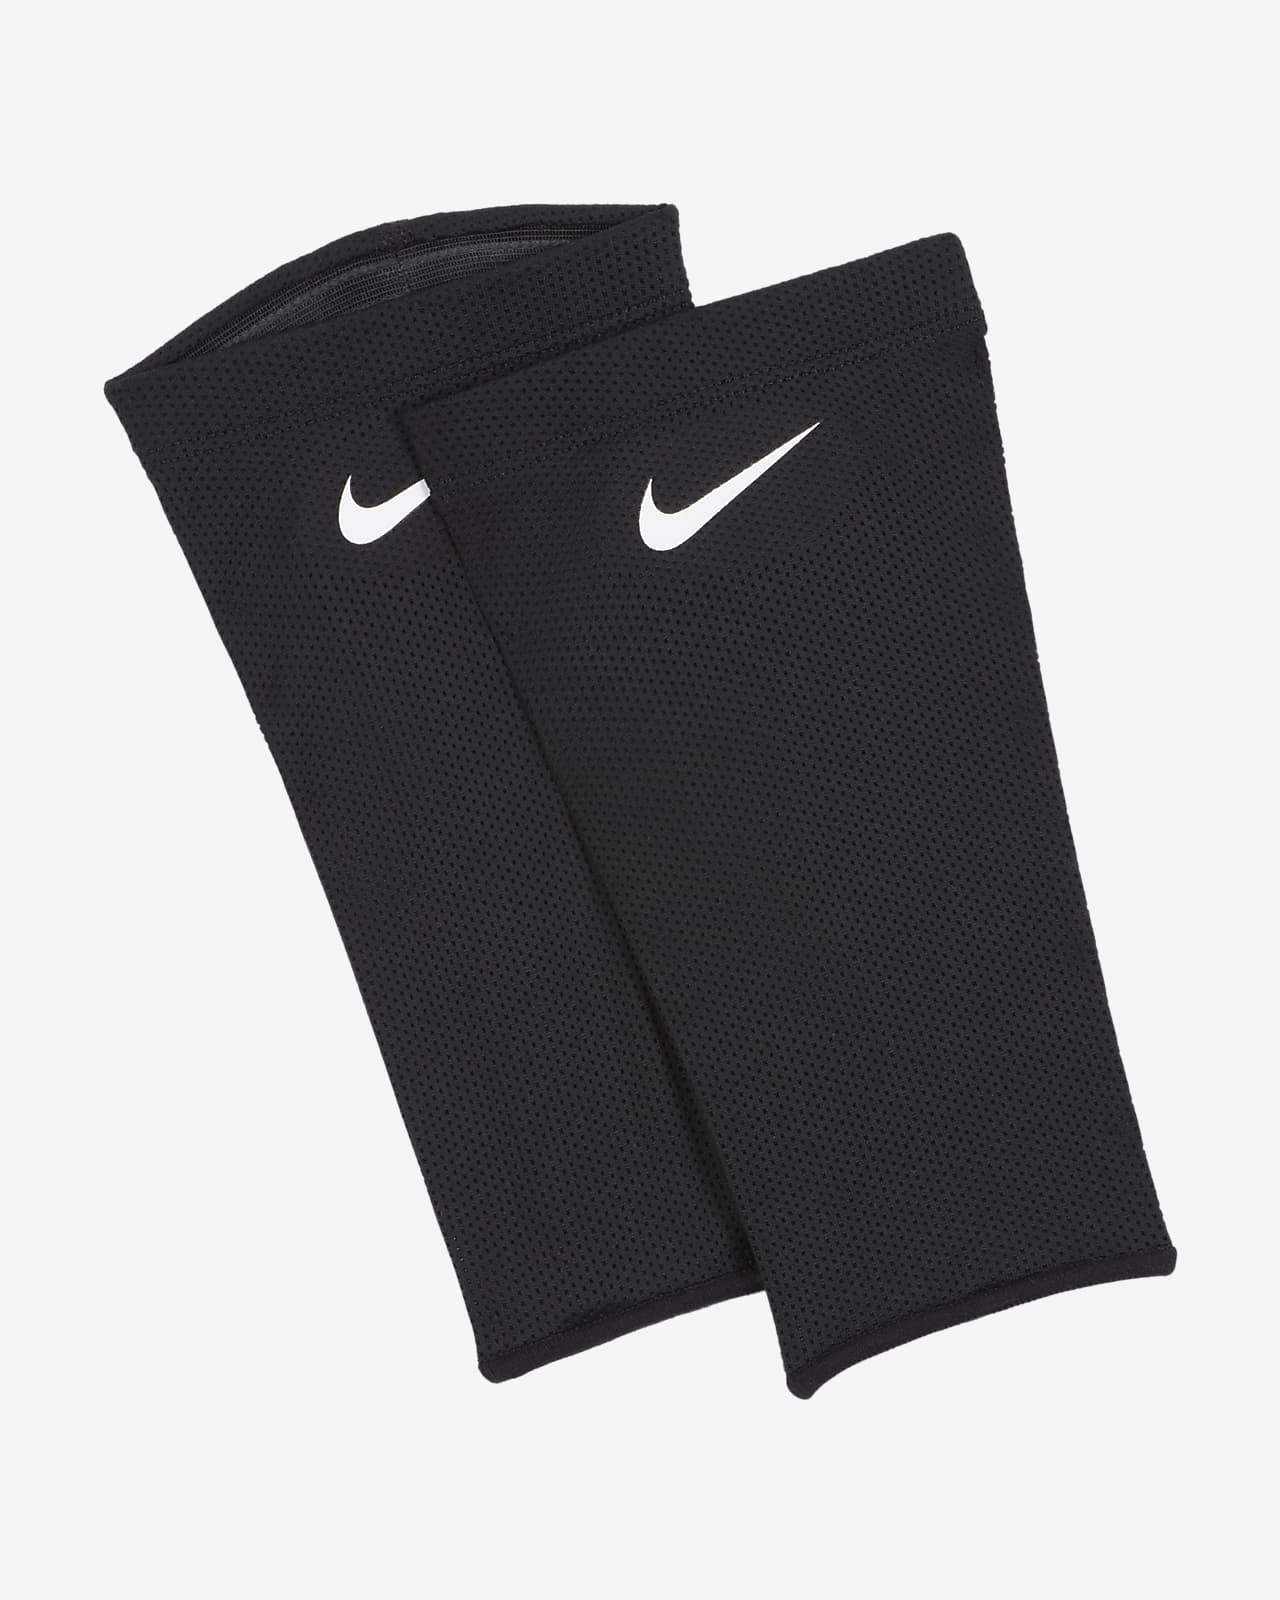 Nike Guard Lock Elite Scheenbeschermersleeves voor voetbal